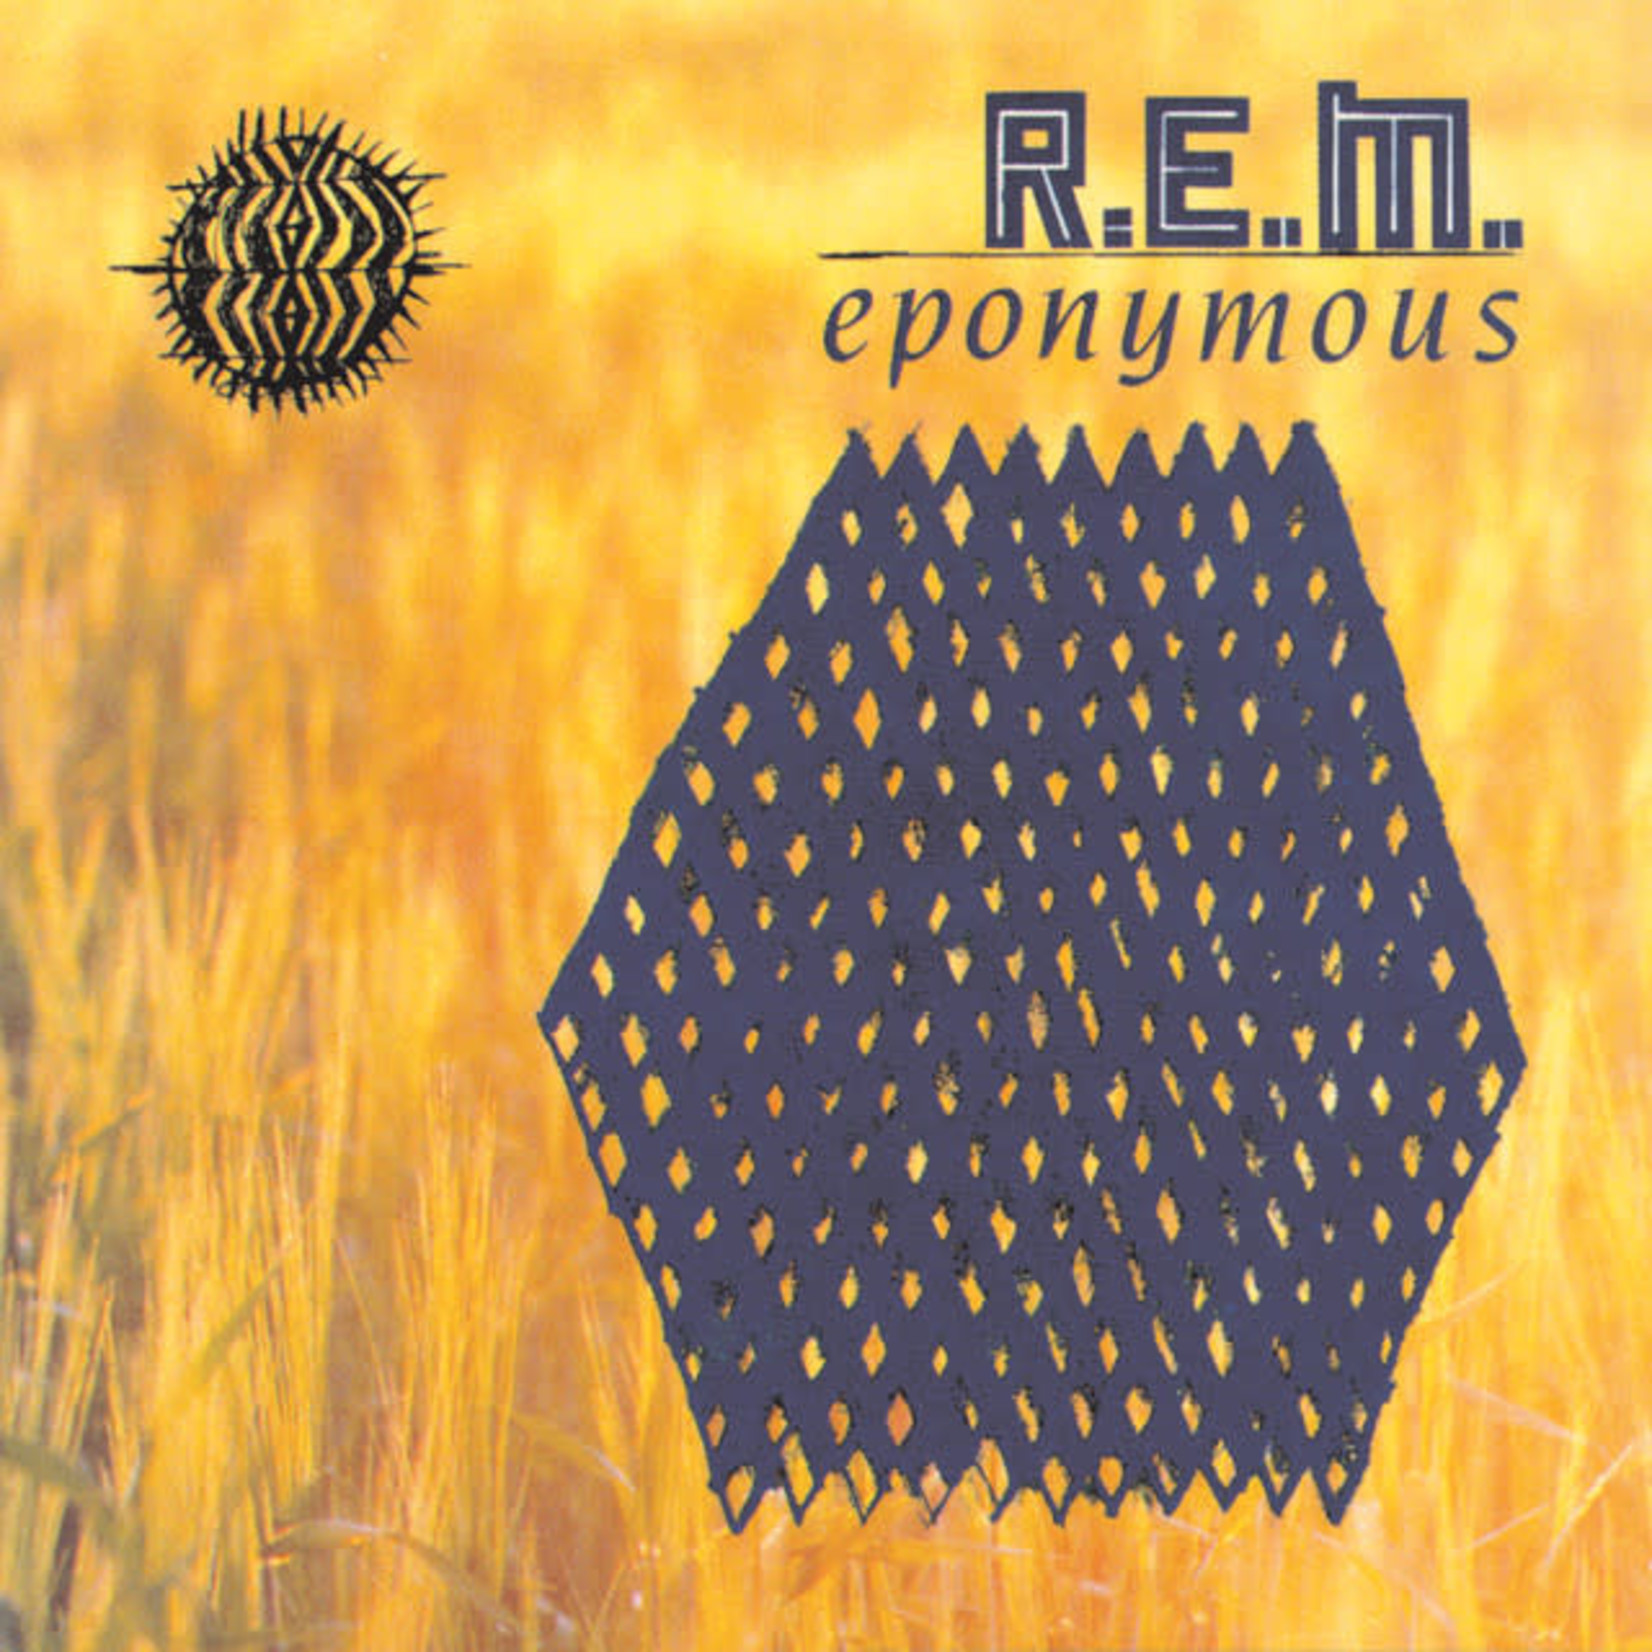 Vinyl R.E.M. - Eponymous (US Import)